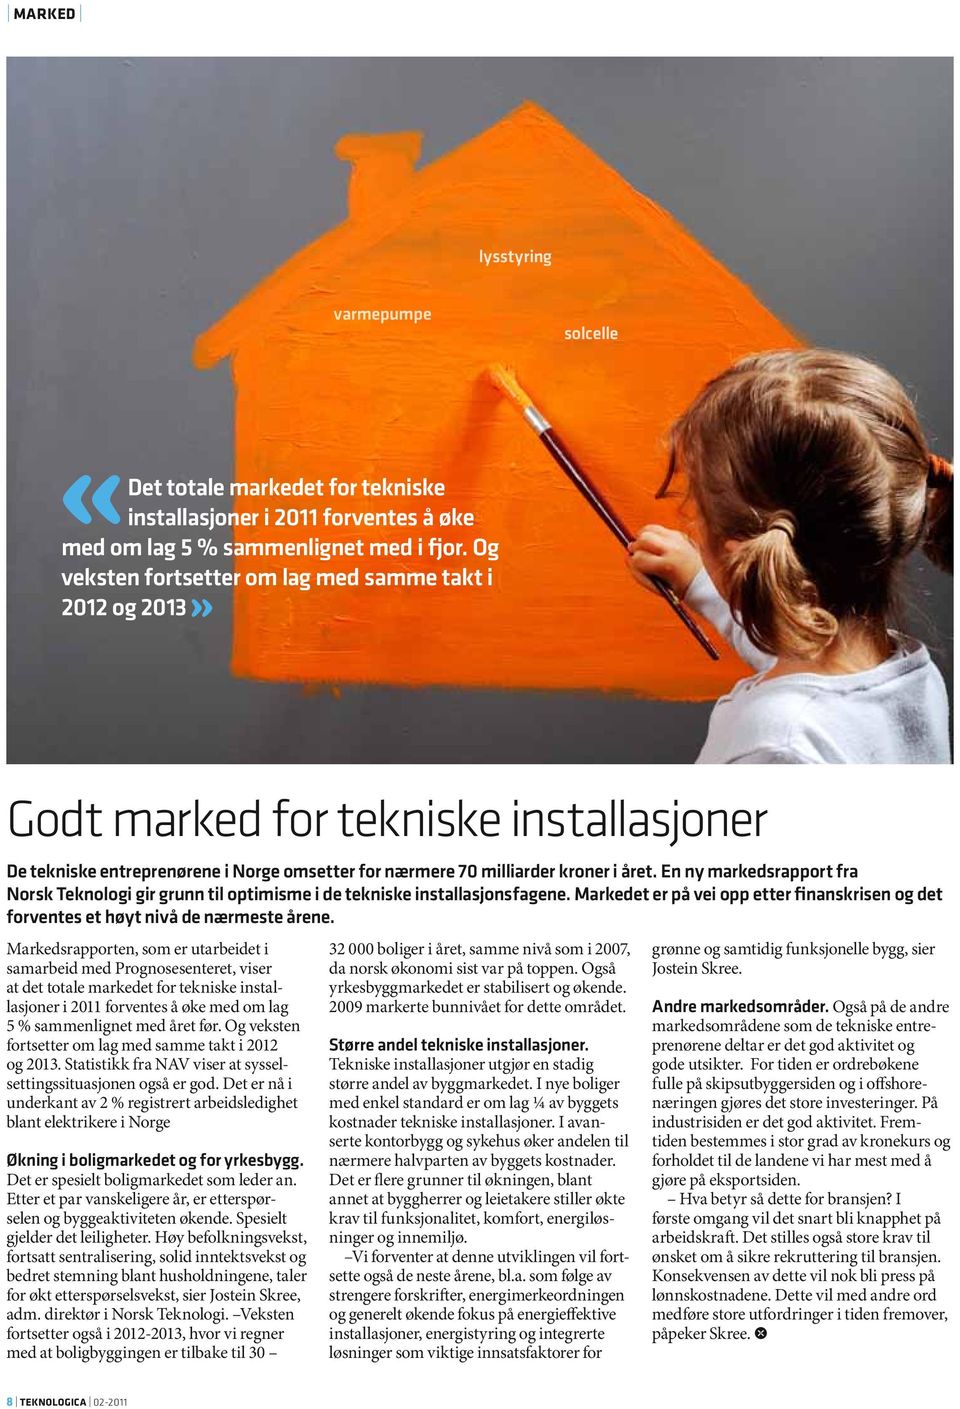 En ny markedsrapport fra Norsk Teknologi gir grunn til optimisme i de tekniske installasjons fagene. Markedet er på vei opp etter finanskrisen og det forventes et høyt nivå de nærmeste årene.